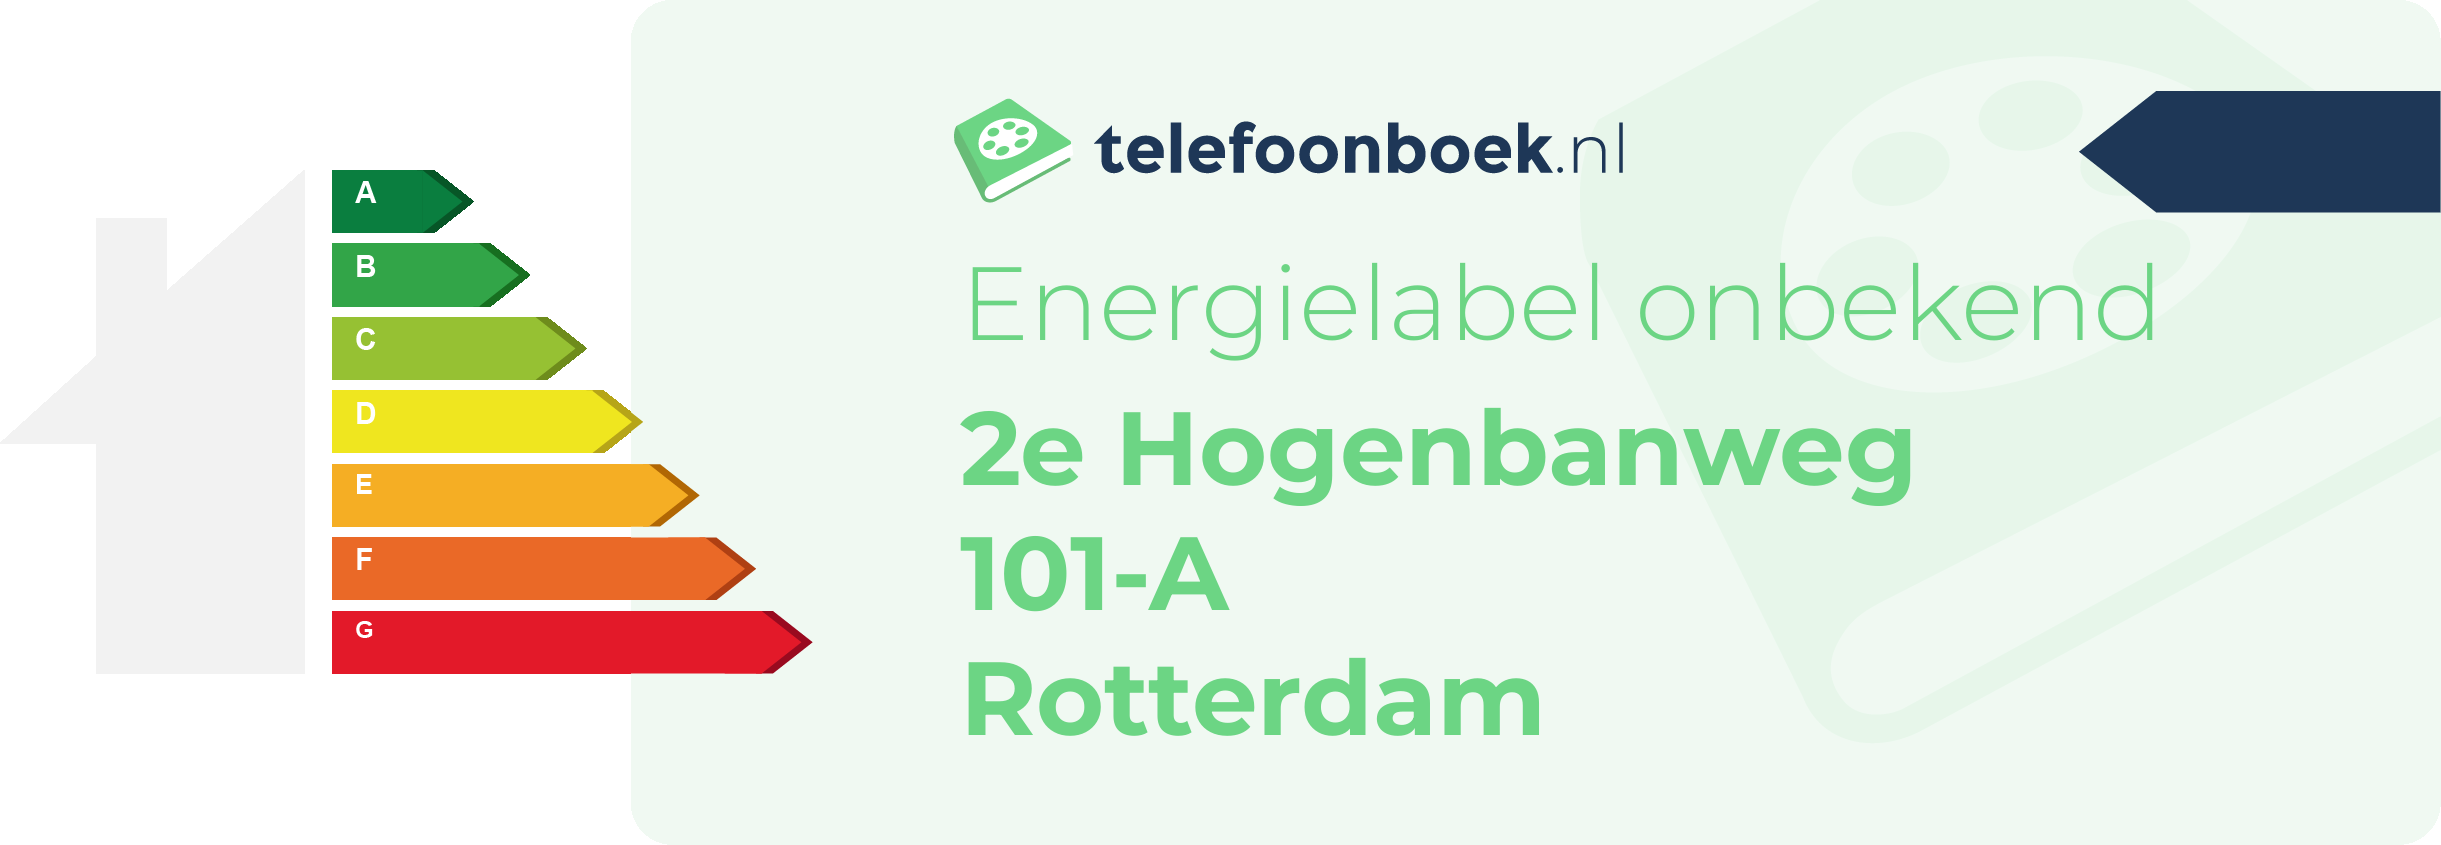 Energielabel 2e Hogenbanweg 101-A Rotterdam